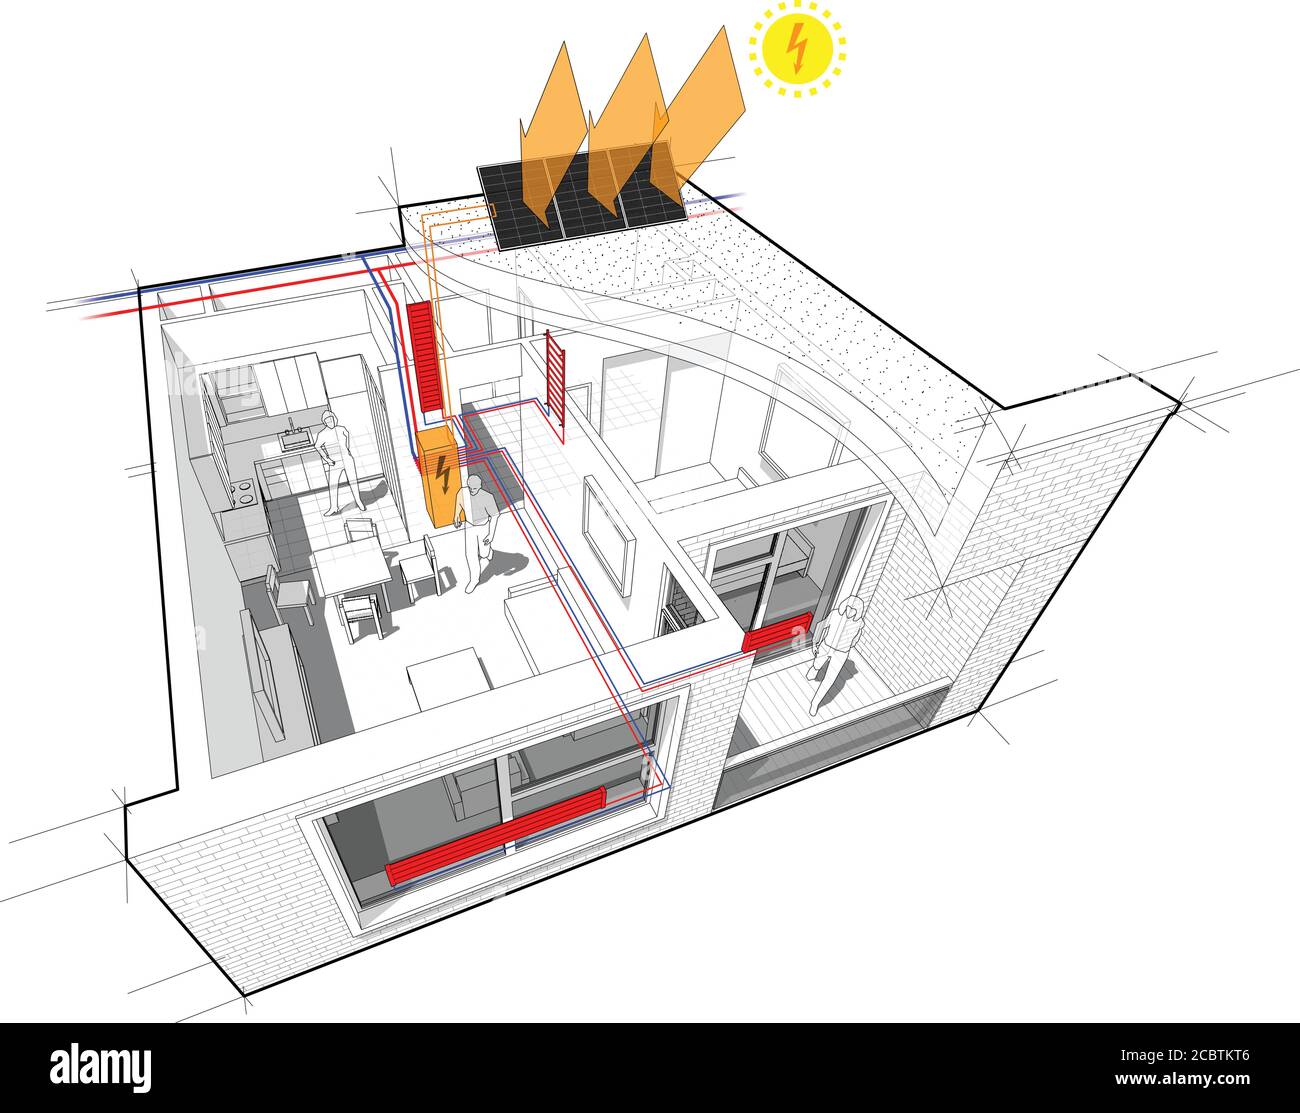 appartamento completamente arredato con riscaldamento del radiatore di acqua calda e centrale tubi di riscaldamento come fonte di energia di riscaldamento e pannelli fotovoltaici Illustrazione Vettoriale